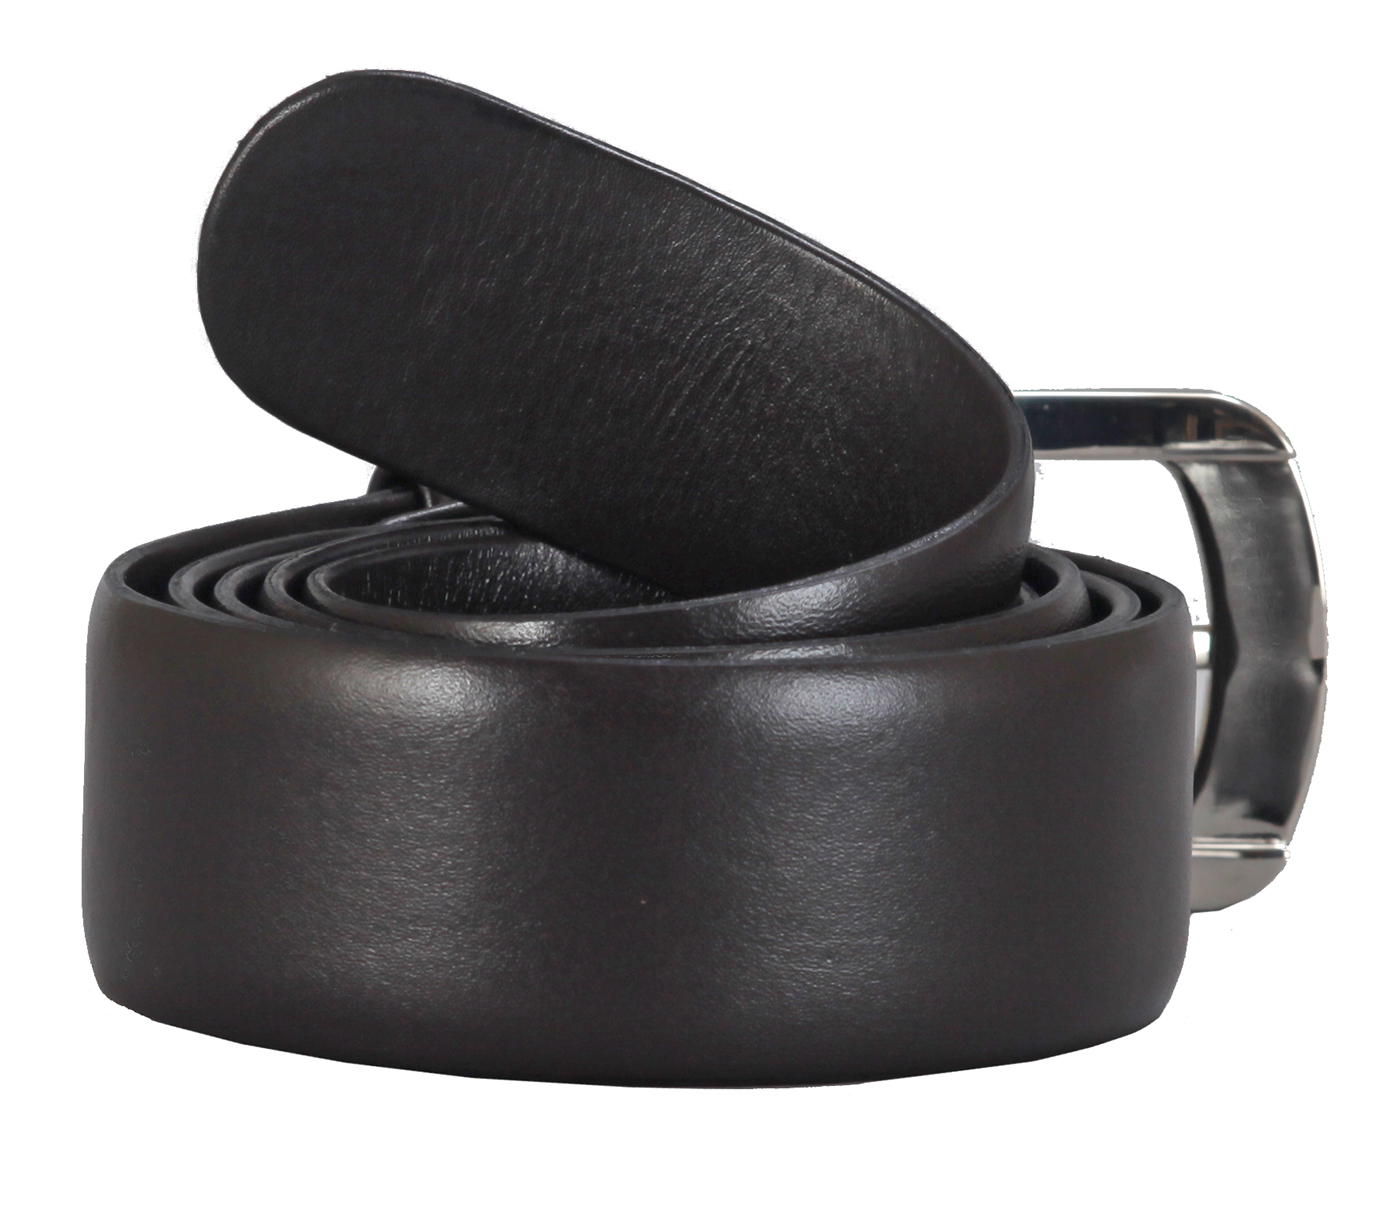 Belt--Men's Formal wear belt in Genuine Leather - Brown.